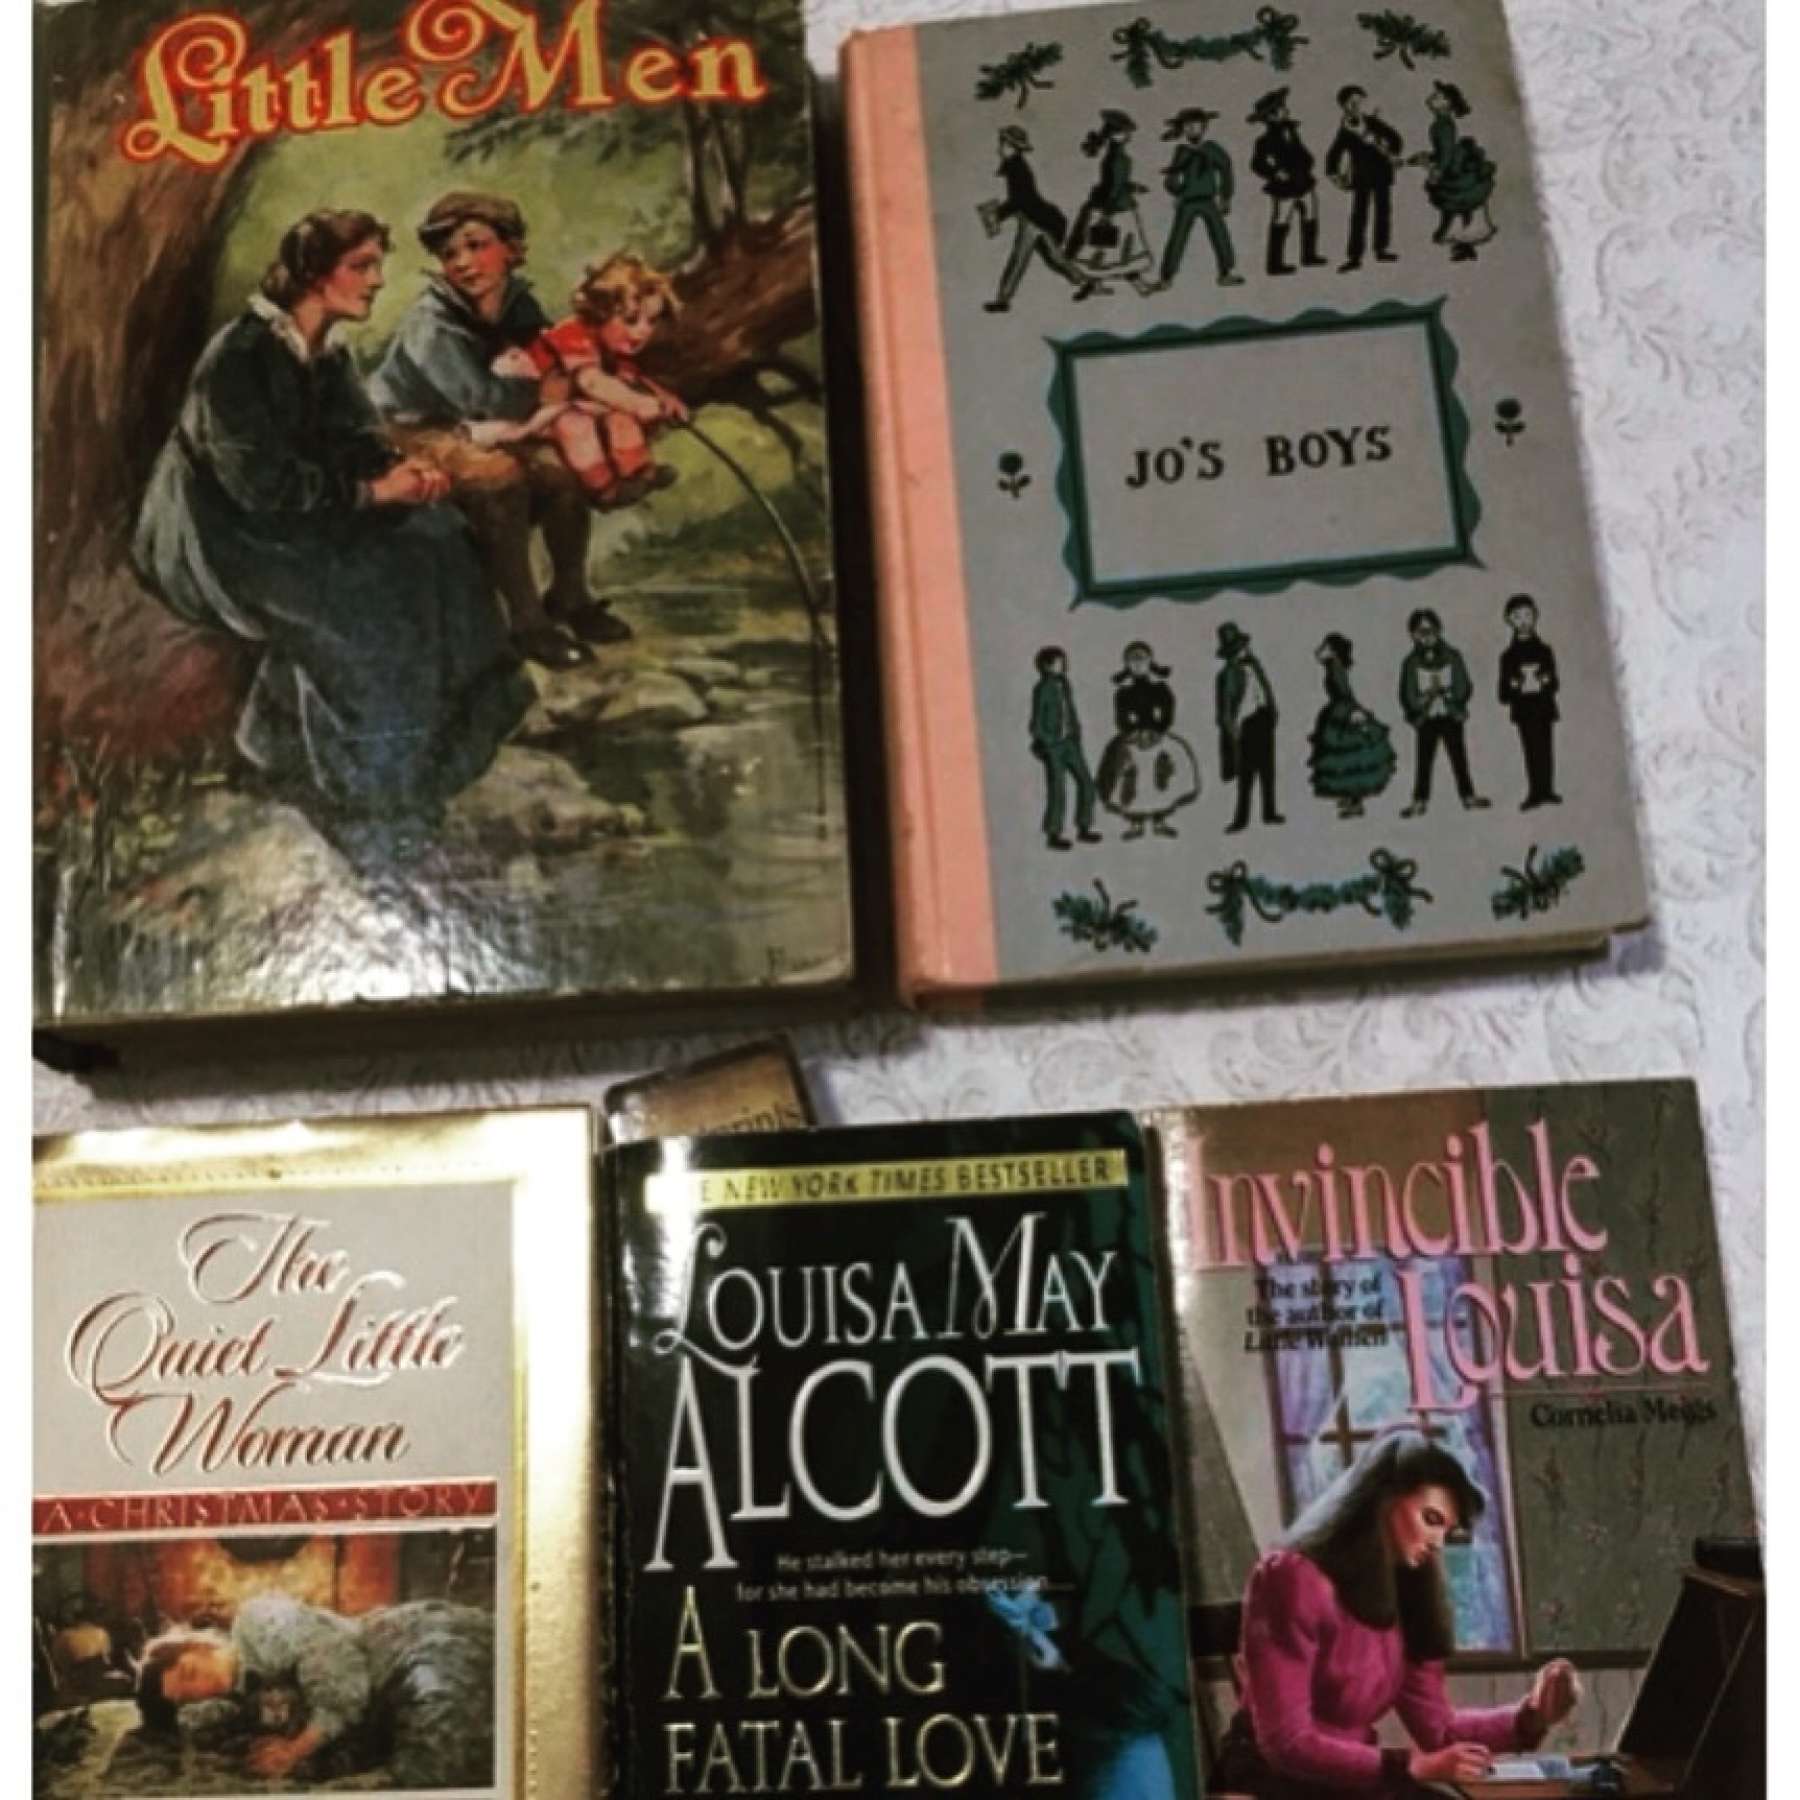 Louisa May Alcott books